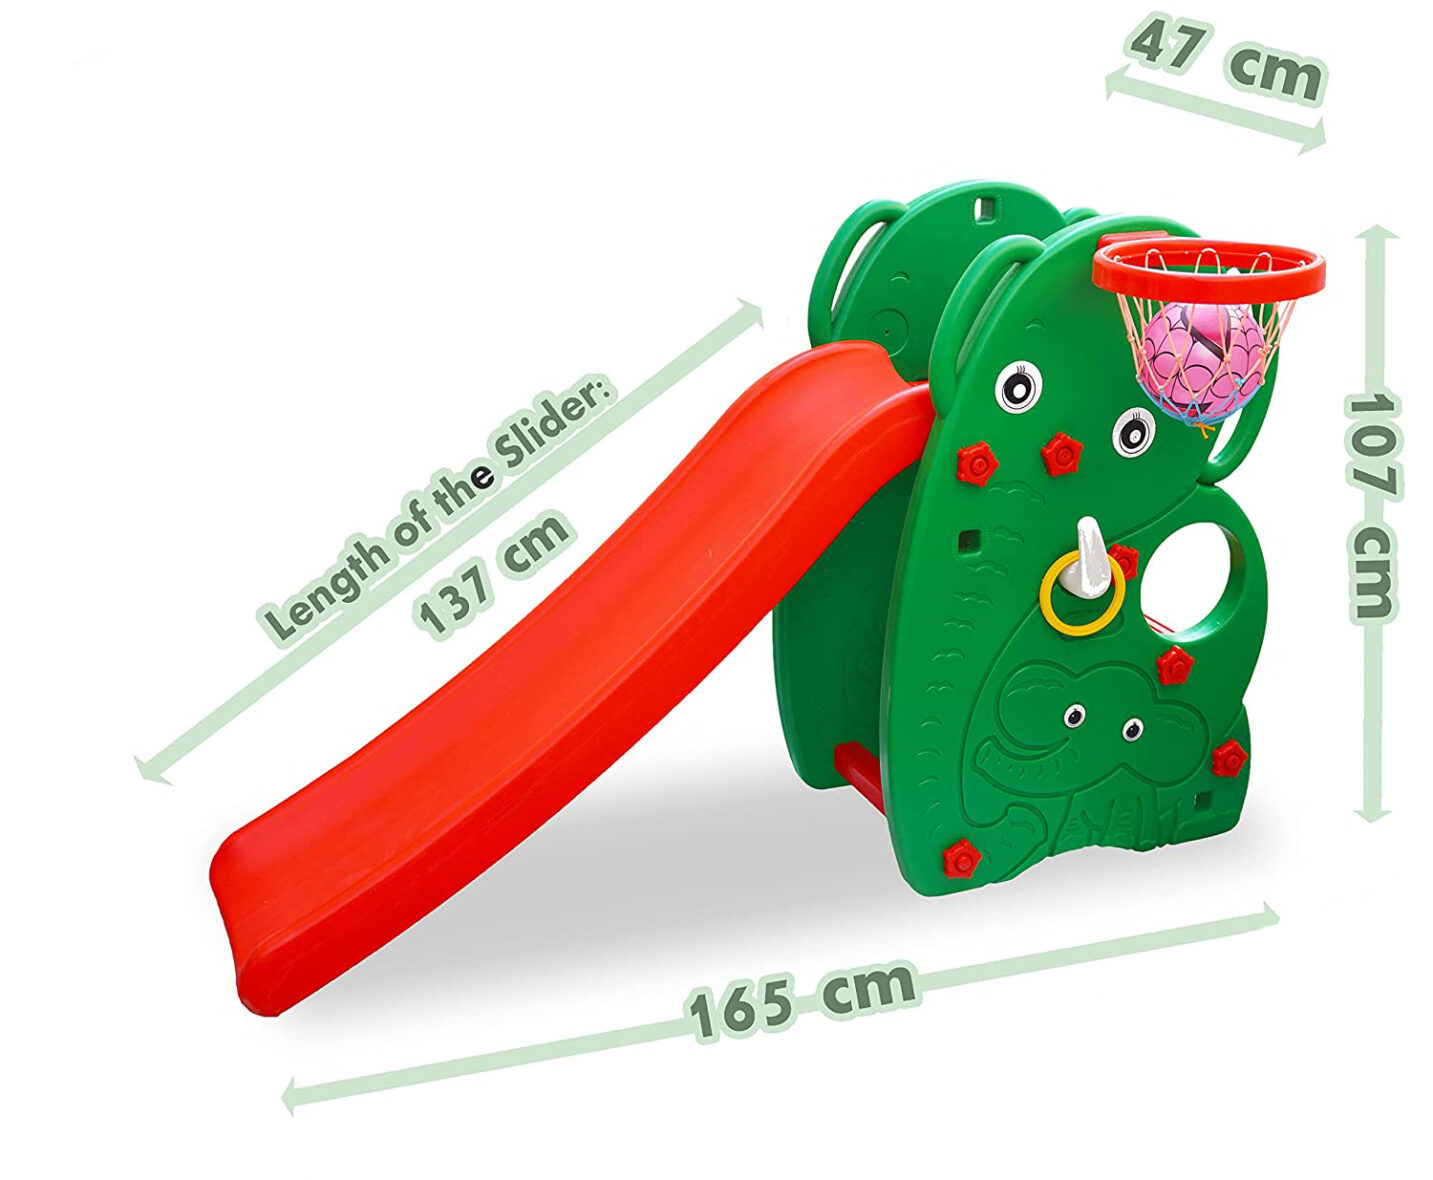 U Smile Plastic elephant Slide-205, Multicolour, 1 to 4 years